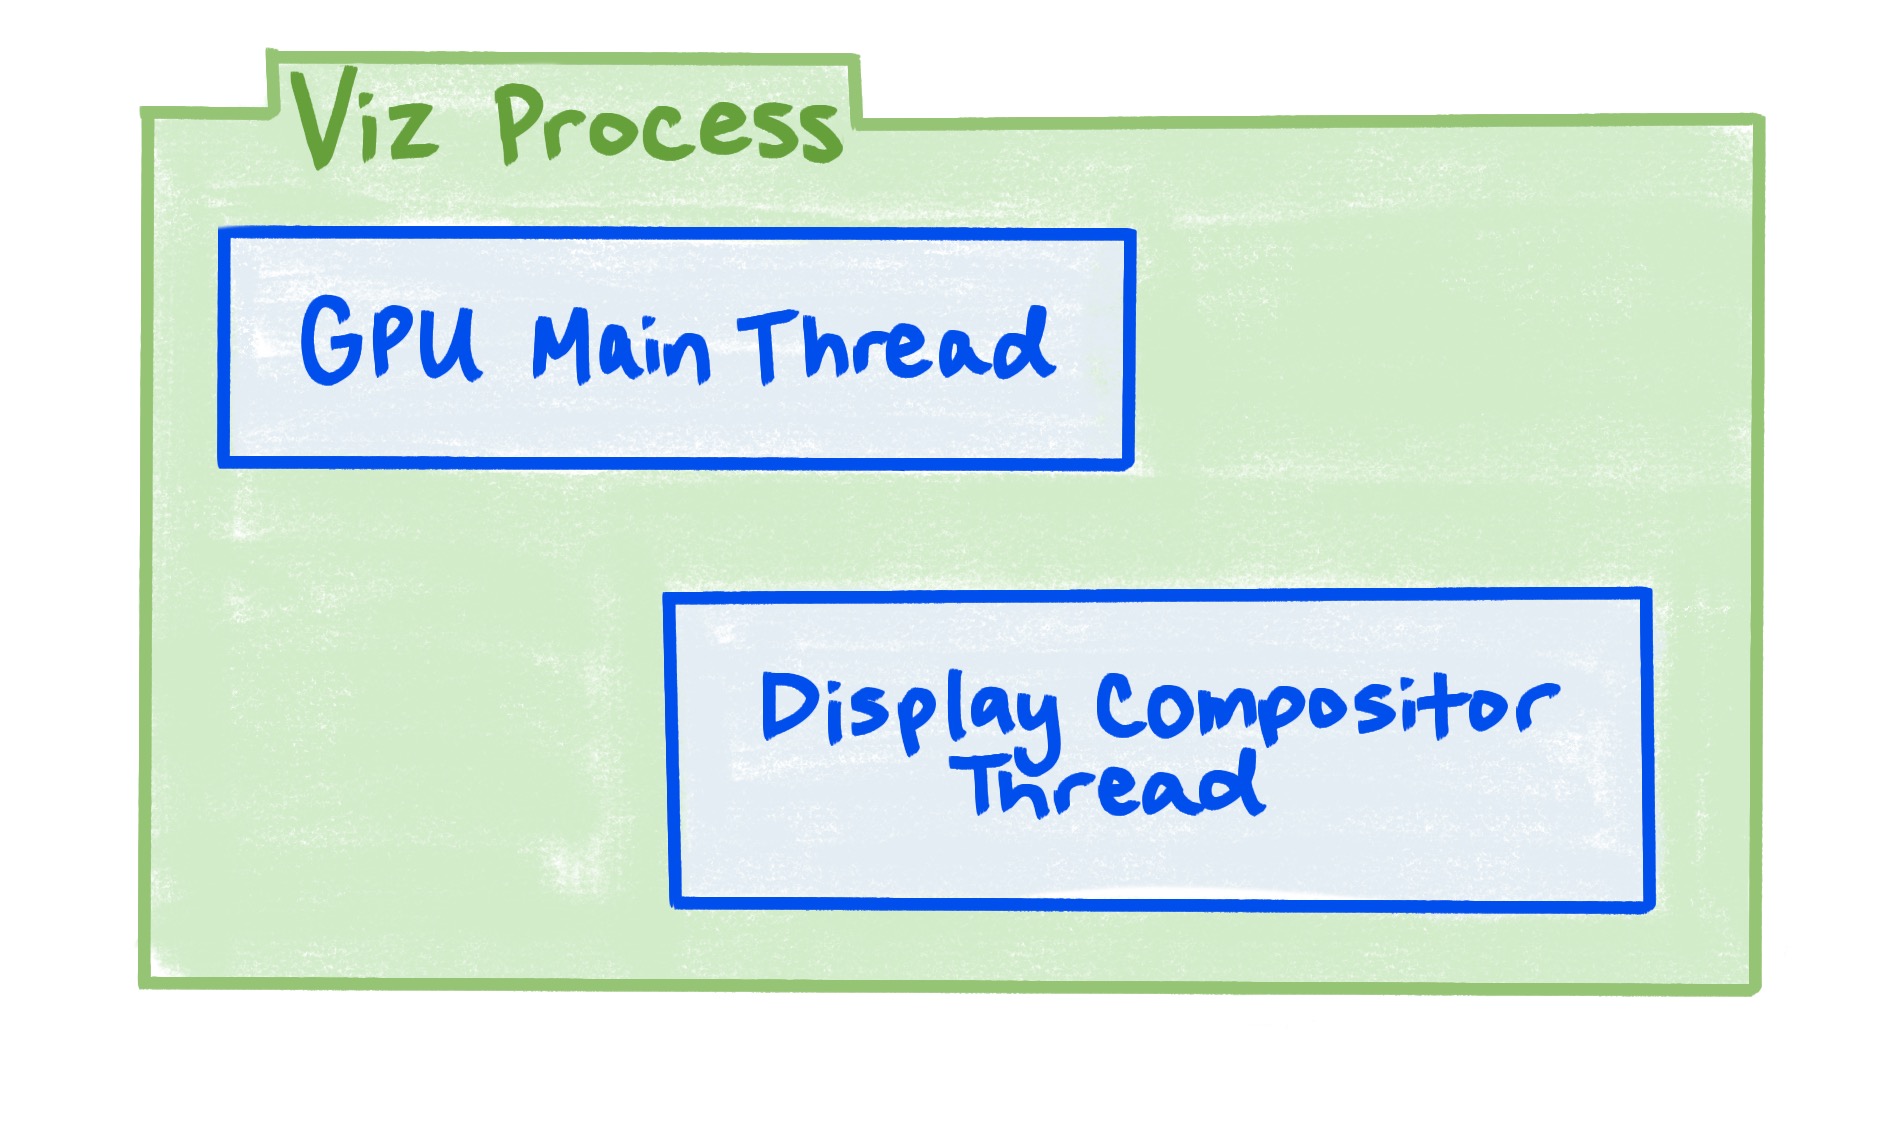 Un diagramma che mostra che il processo di visualizzazione include il thread principale della GPU e il thread del compositor del display.